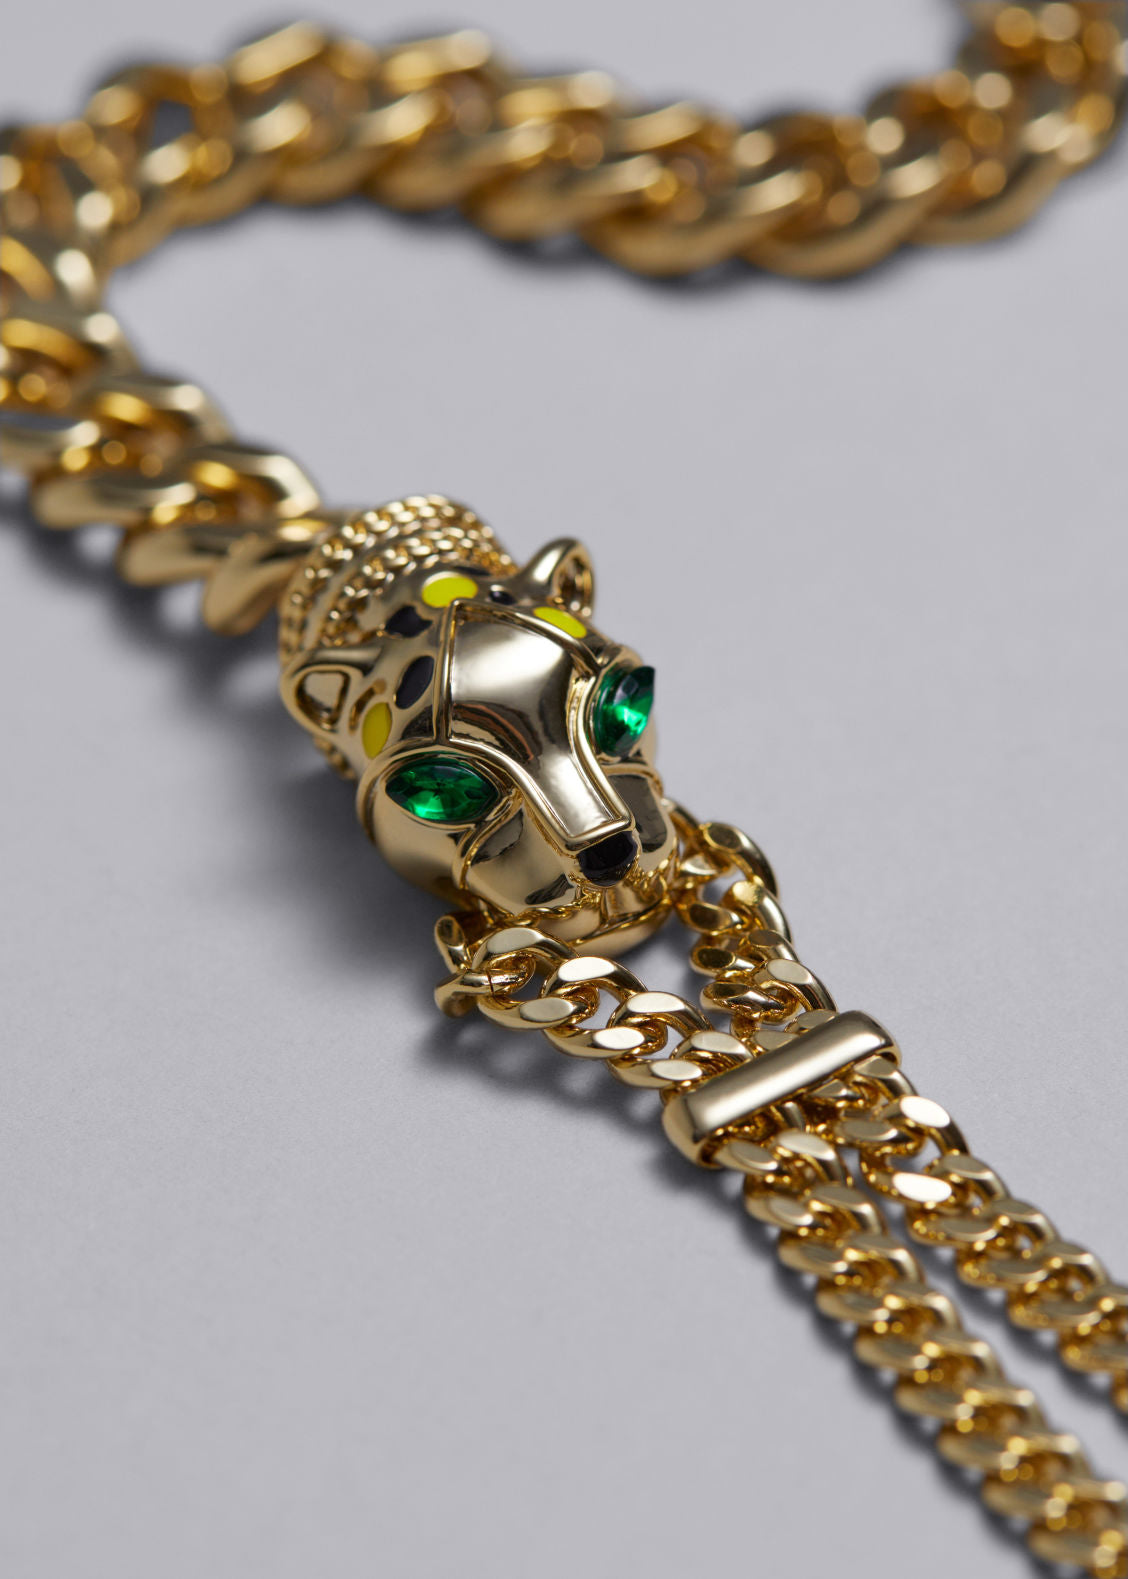 Jaguar chain necklace